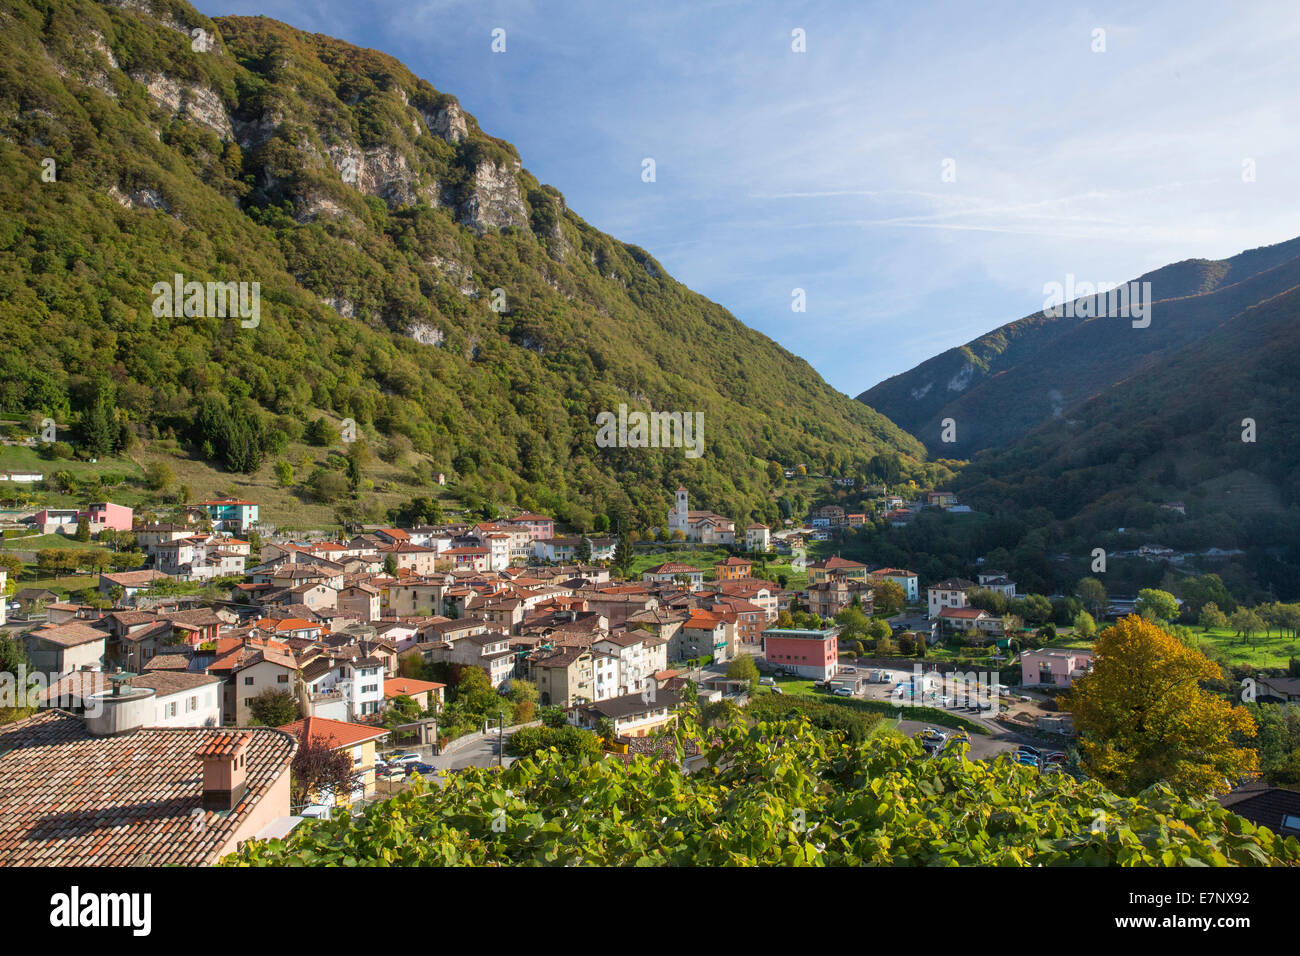 Arogno TI, mountain, mountains, autumn, canton, Ticino, Southern Switzerland, village, Switzerland, Europe, Stock Photo